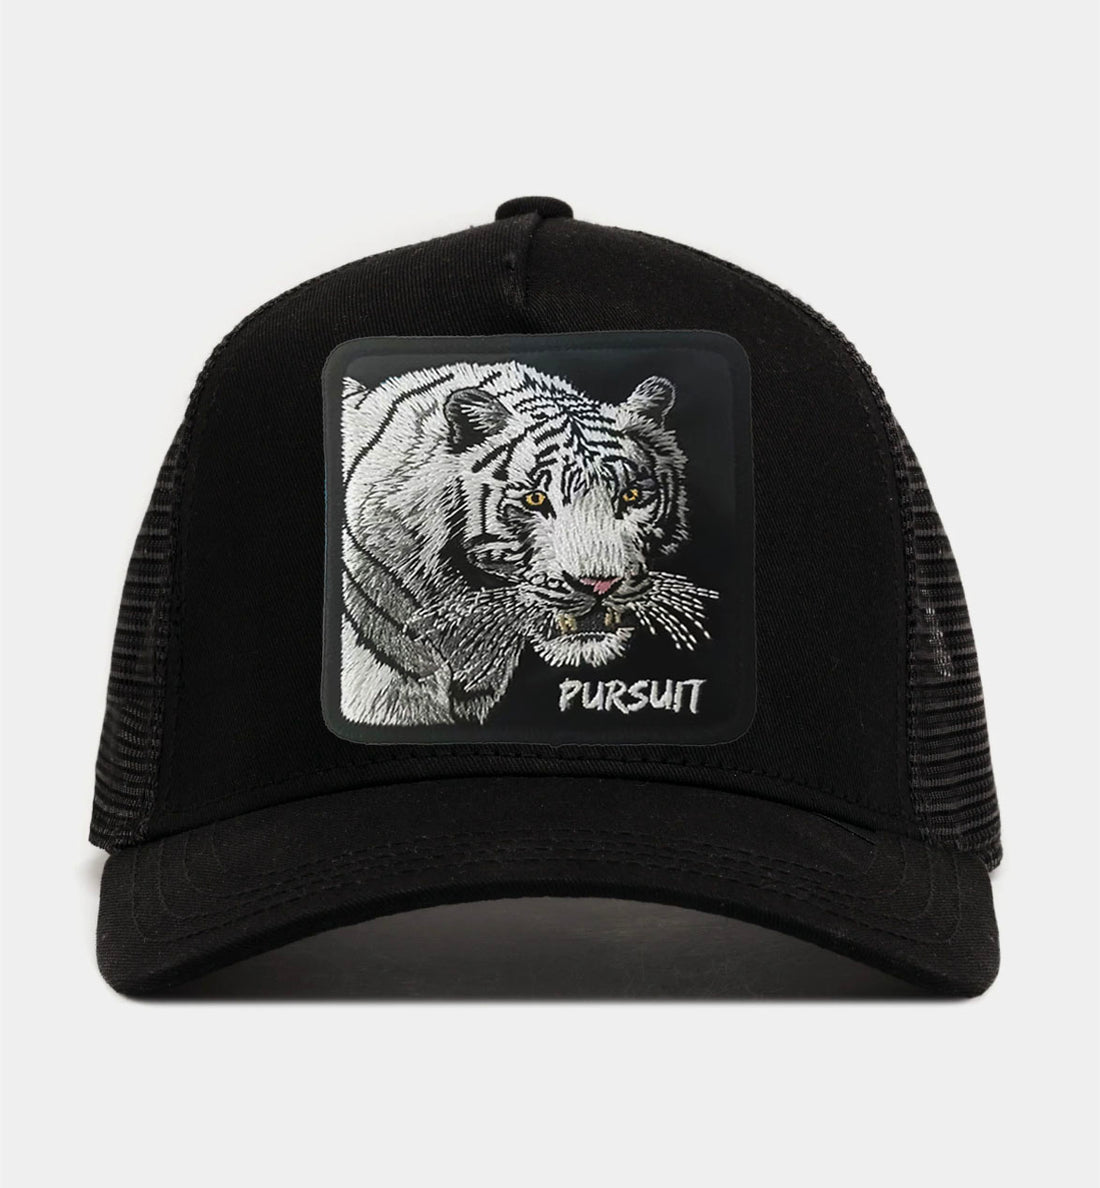 White Tiger - "Pursuit" Trucker Hat